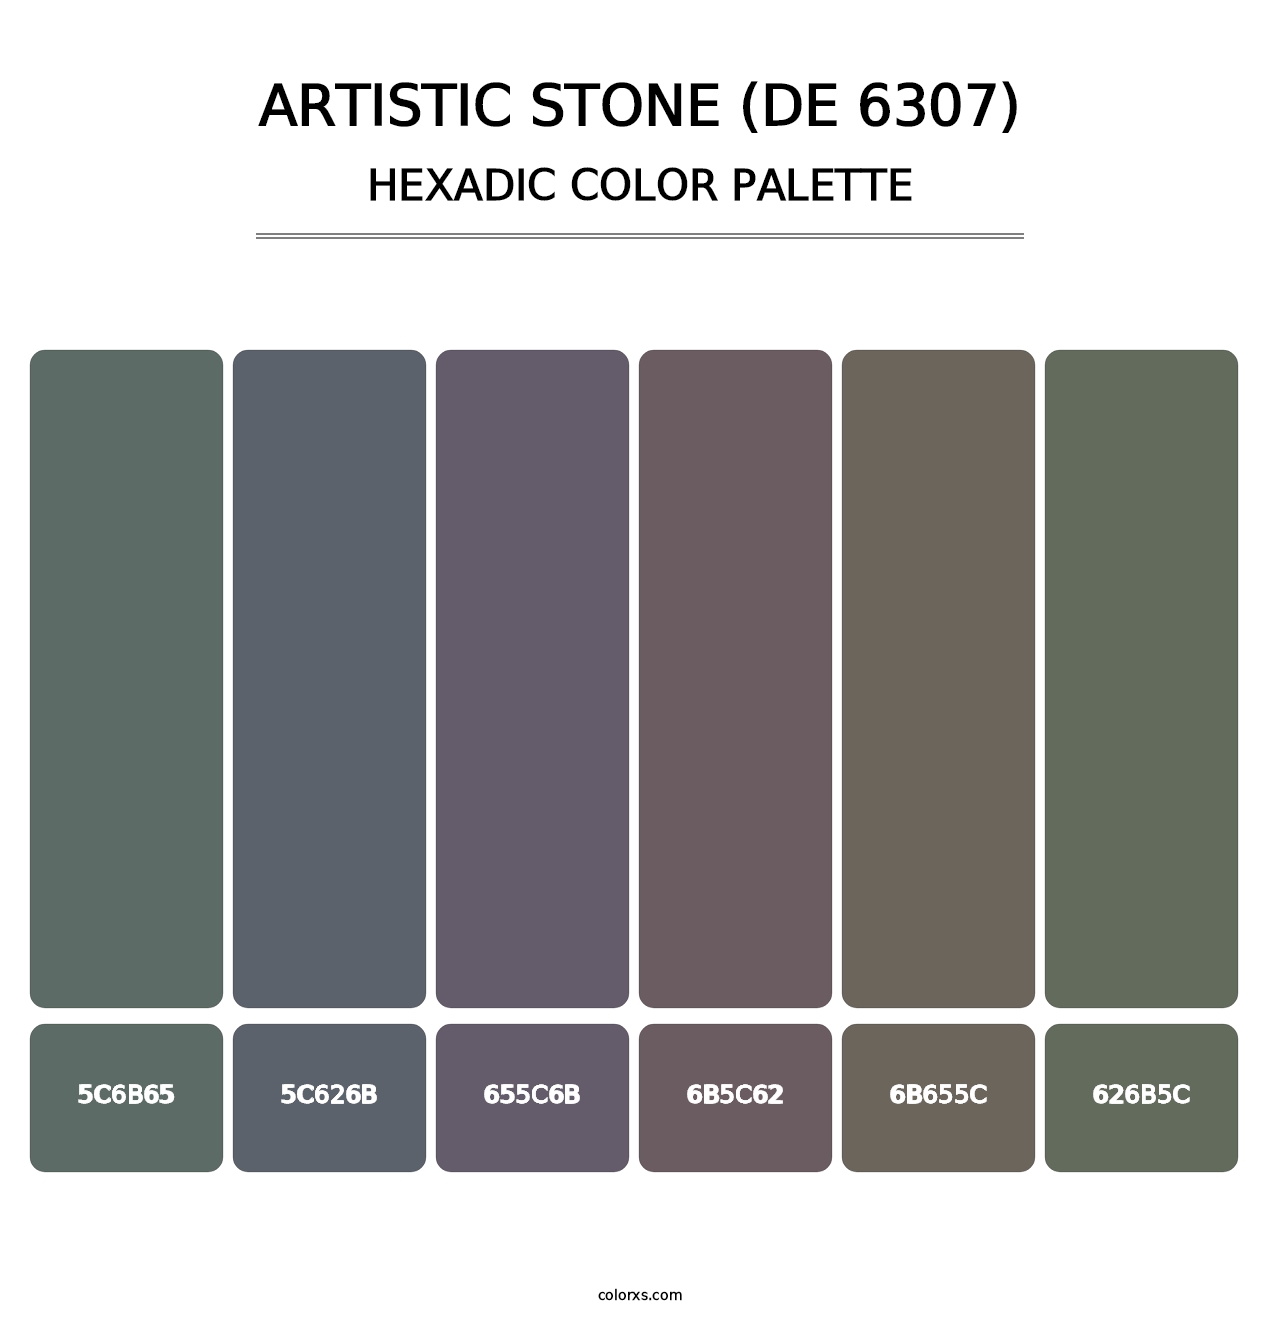 Artistic Stone (DE 6307) - Hexadic Color Palette